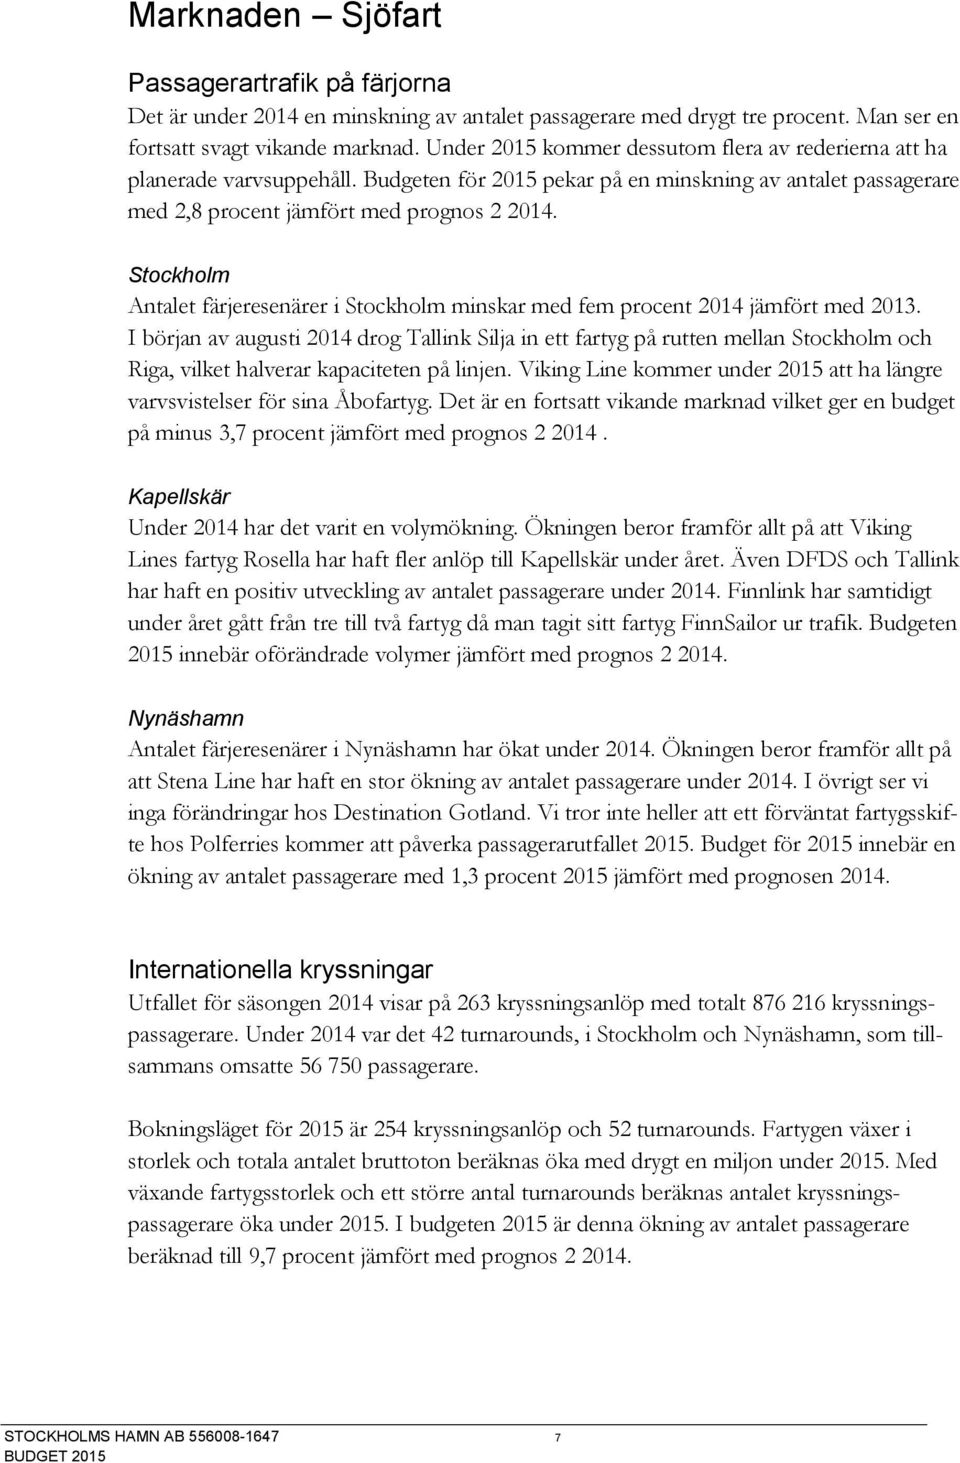 Stockholm Antalet färjeresenärer i Stockholm minskar med fem procent 2014 jämfört med 2013.